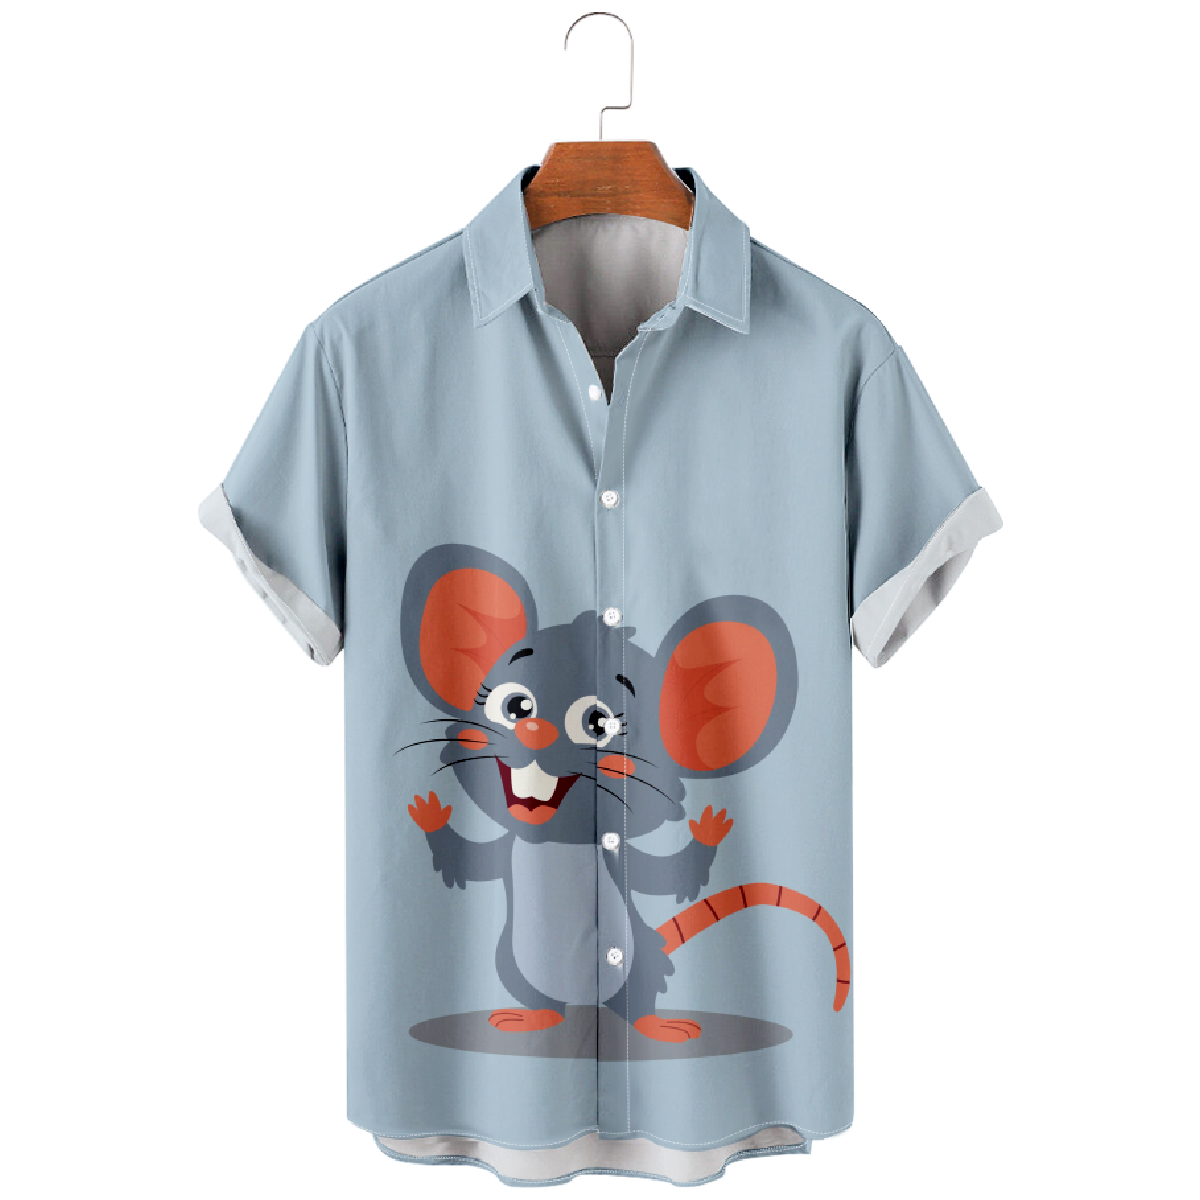 Cute Rat Print Button Up Shirt for Men Short Sleeve Shirt Regular Fit